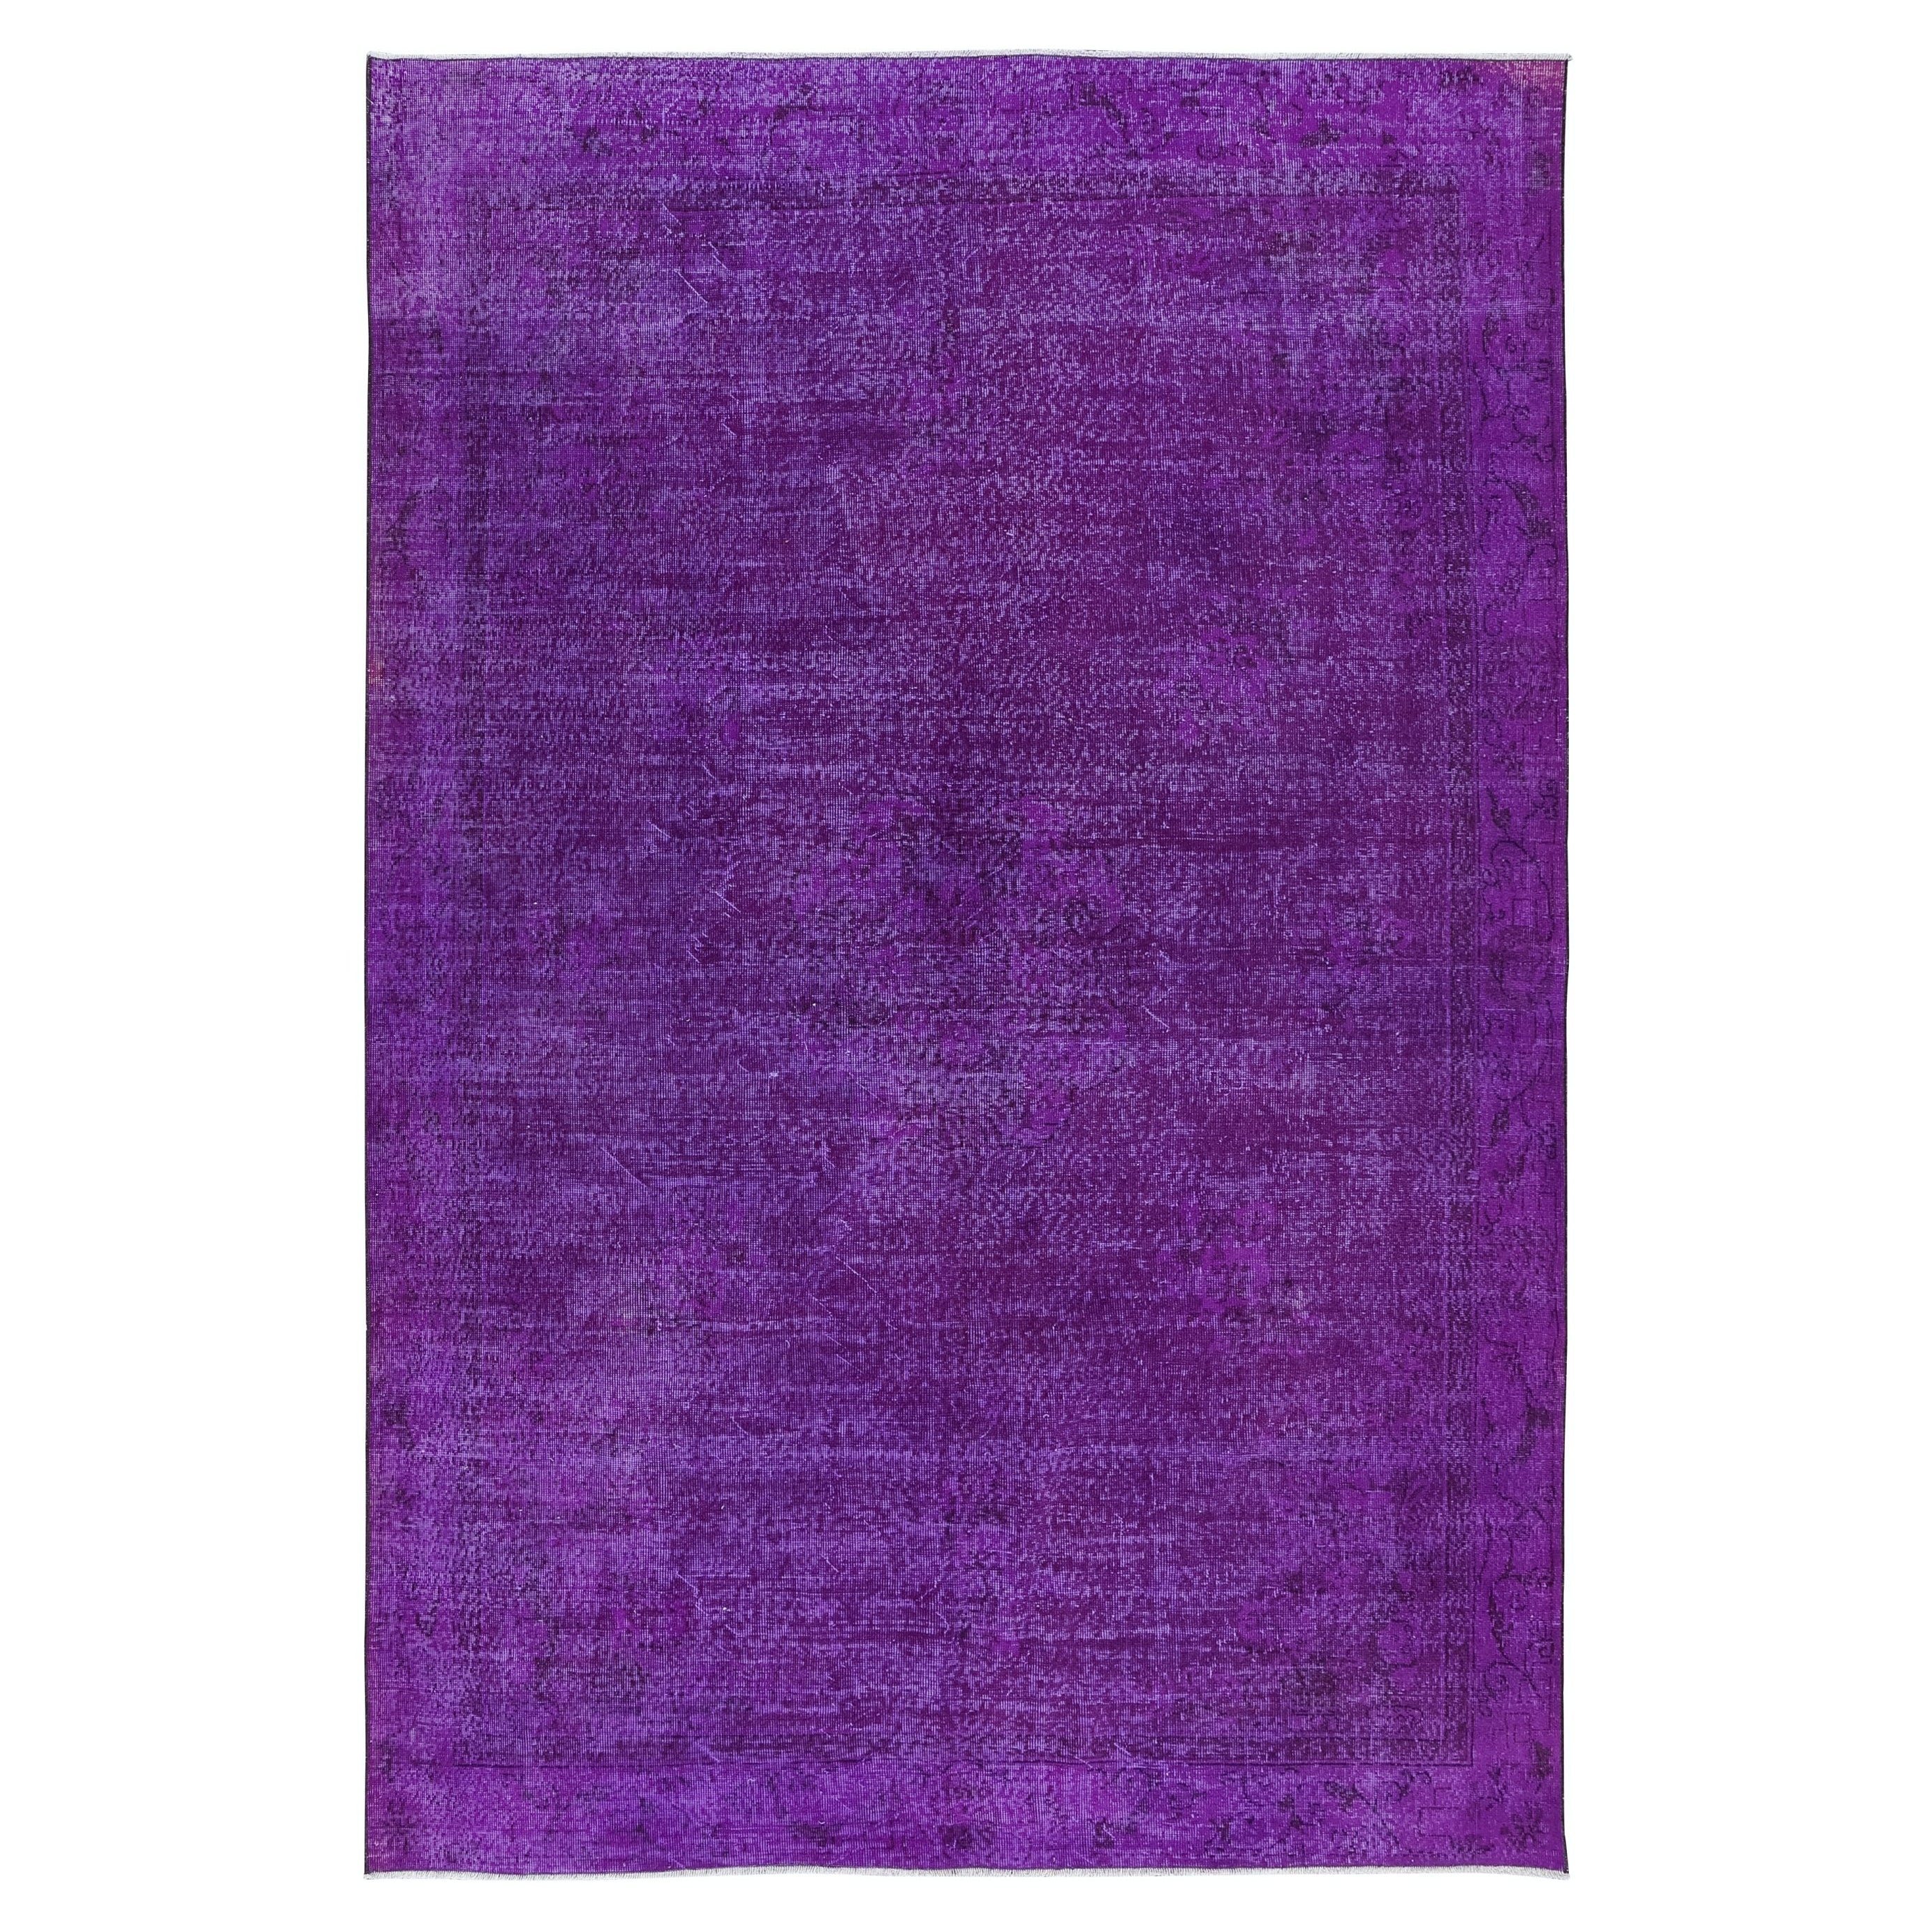 7.3x11 Ft Plain Purple Unique Handknotted Large Rug. Modern Turkish Bohem Carpet